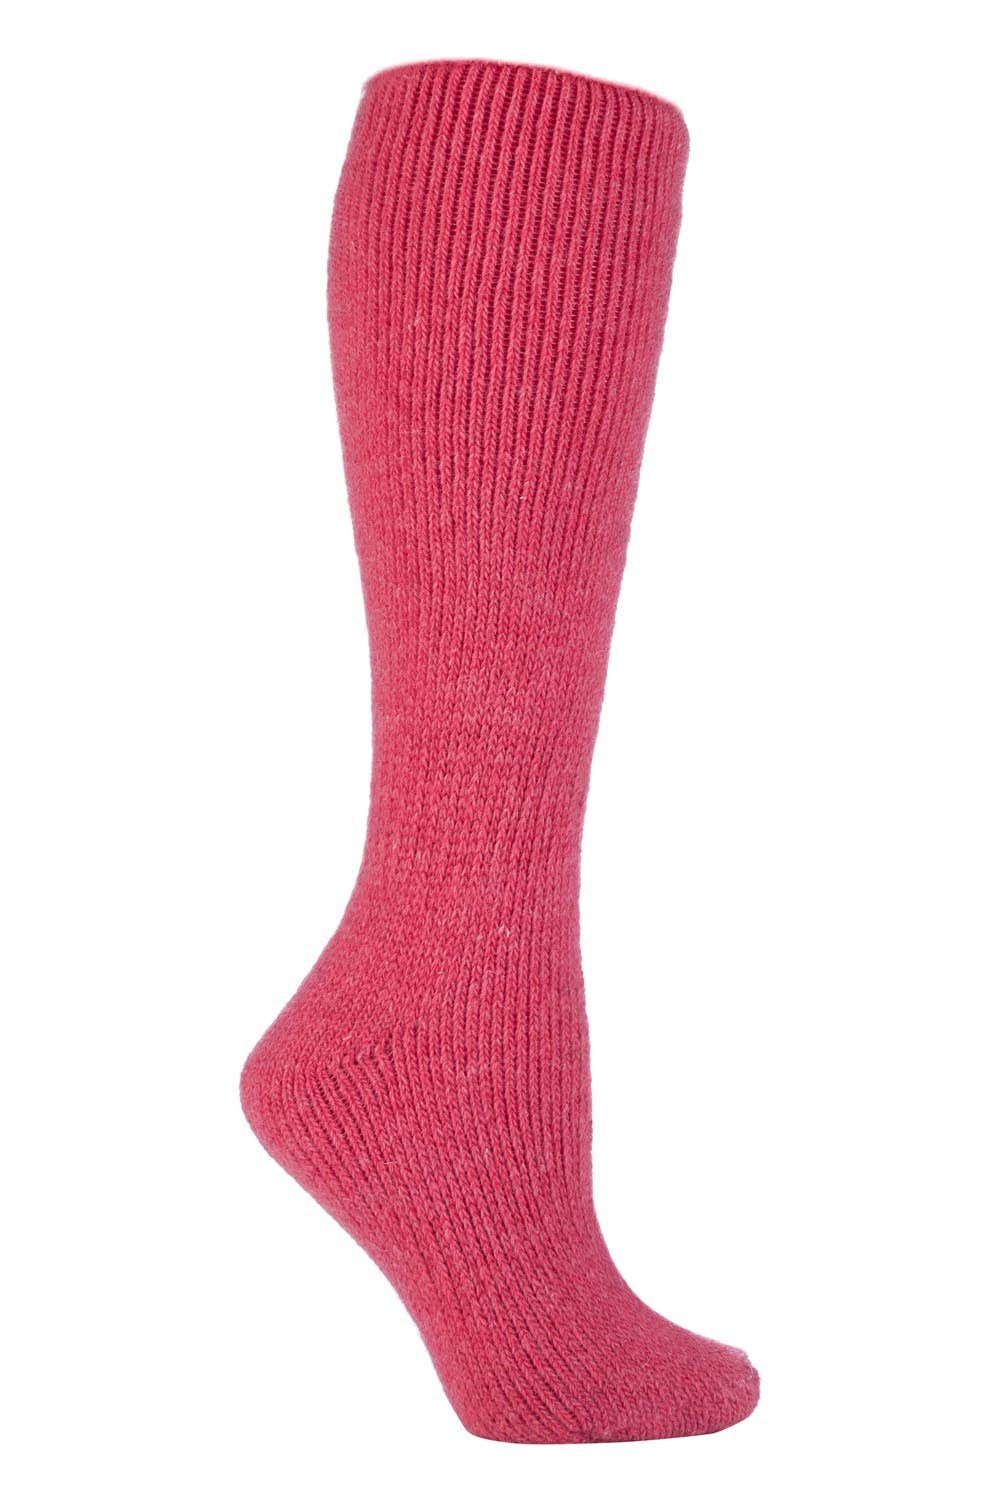 Womens Knee High Thermal Wool Rich Socks -